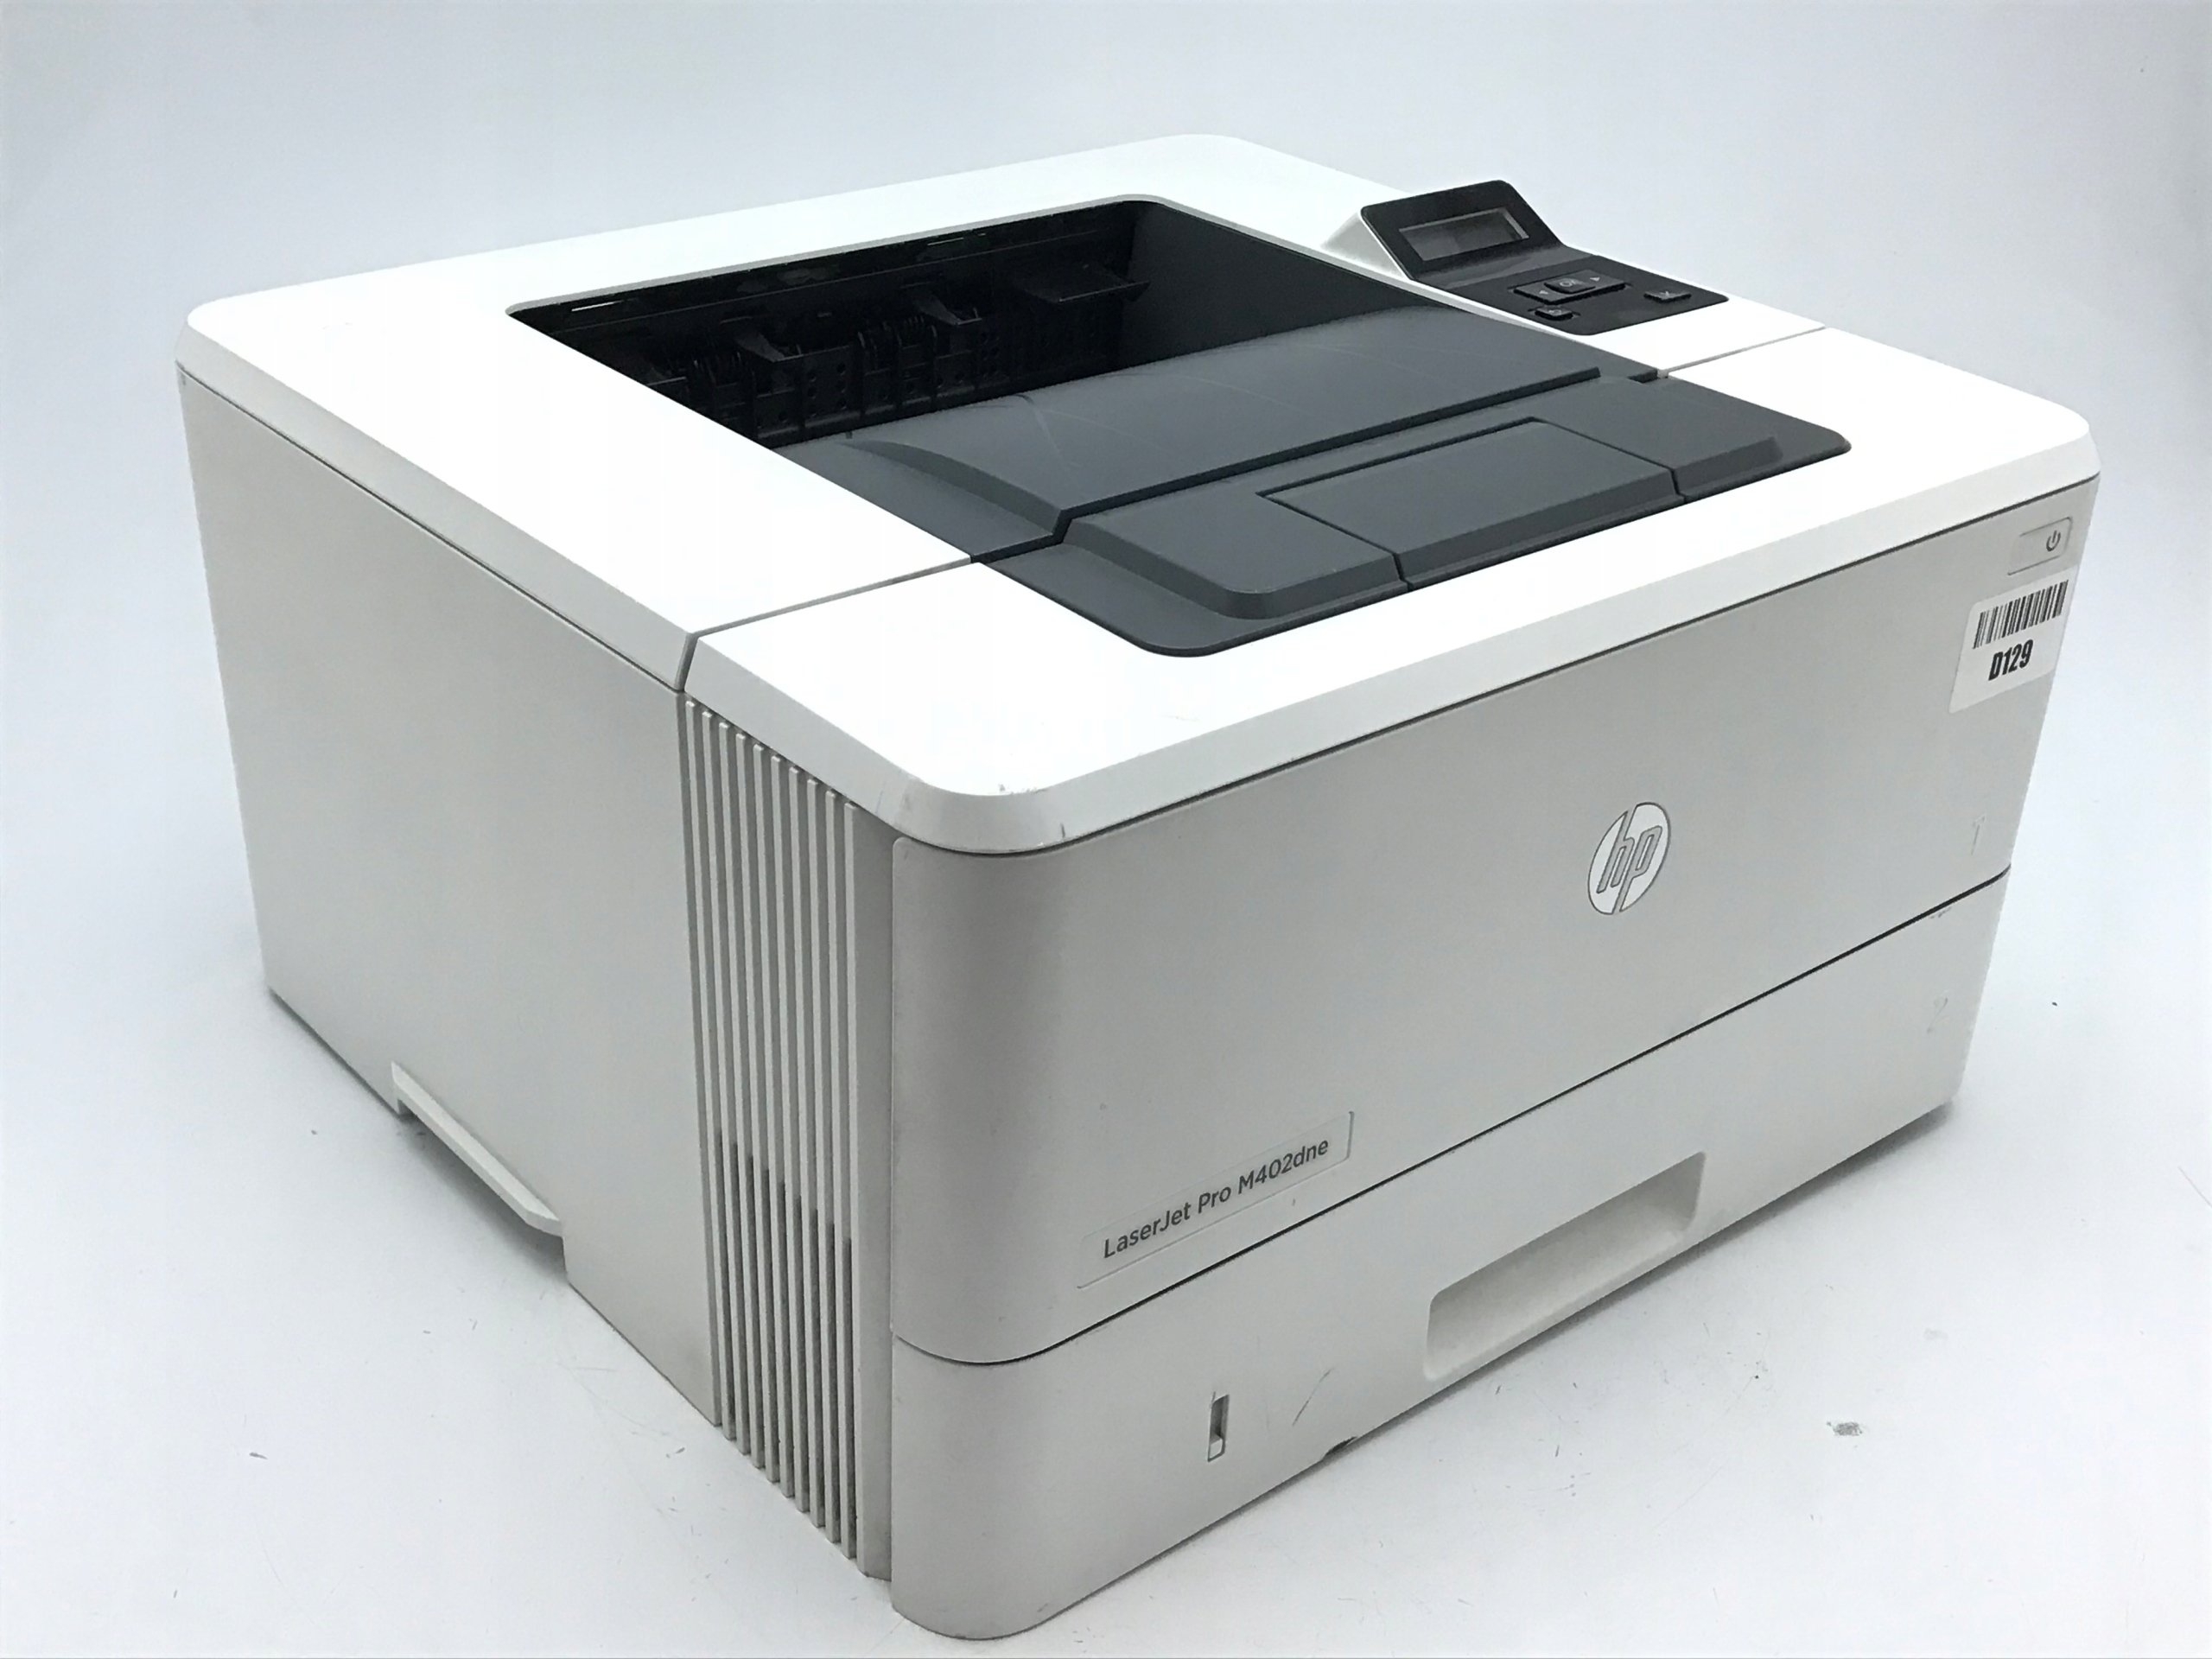 Лазерный принтер максимальное разрешение